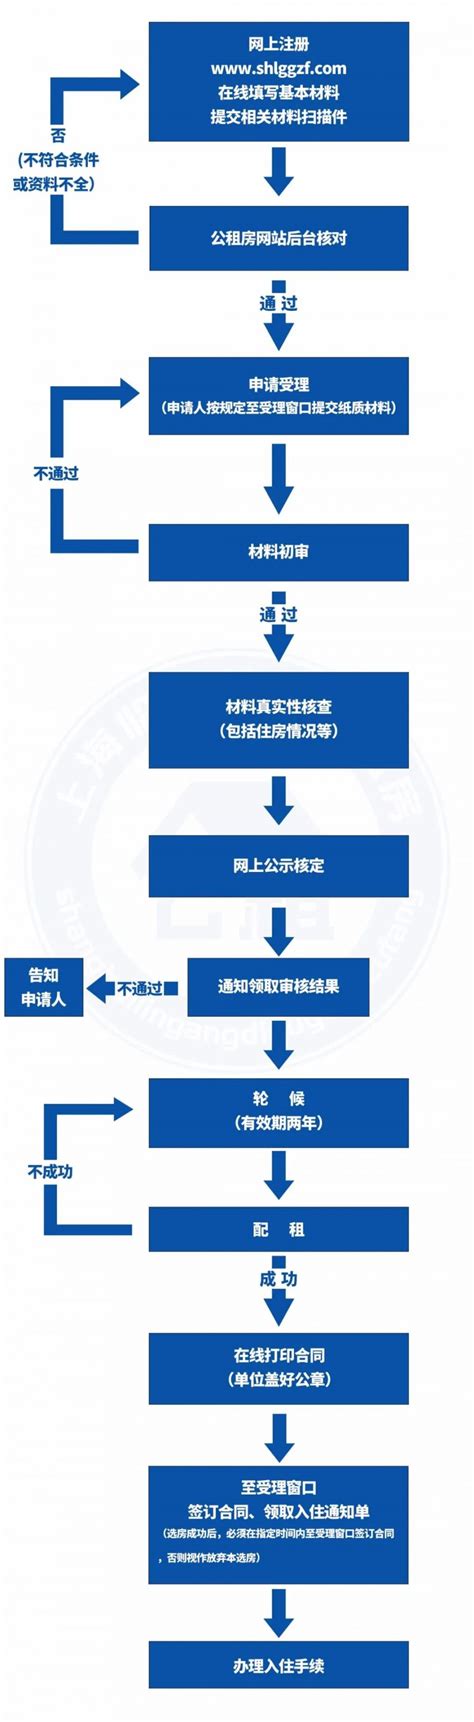 上海个人申请公租房具体流程